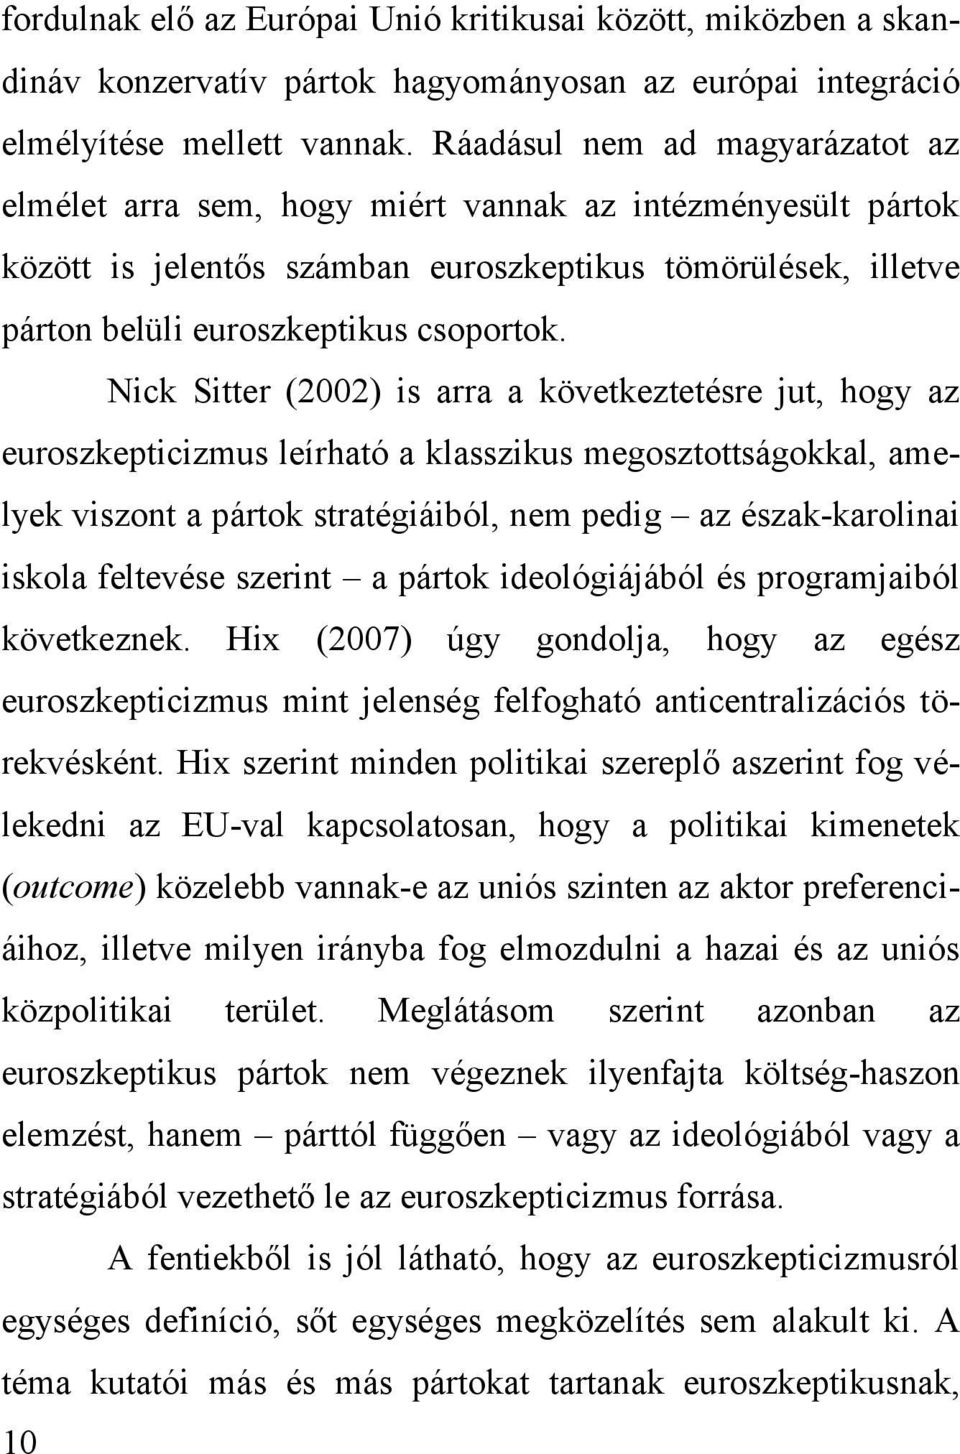 Nick Sitter (2002) is arra a következtetésre jut, hogy az euroszkepticizmus leírható a klasszikus megosztottságokkal, amelyek viszont a pártok stratégiáiból, nem pedig az észak-karolinai iskola